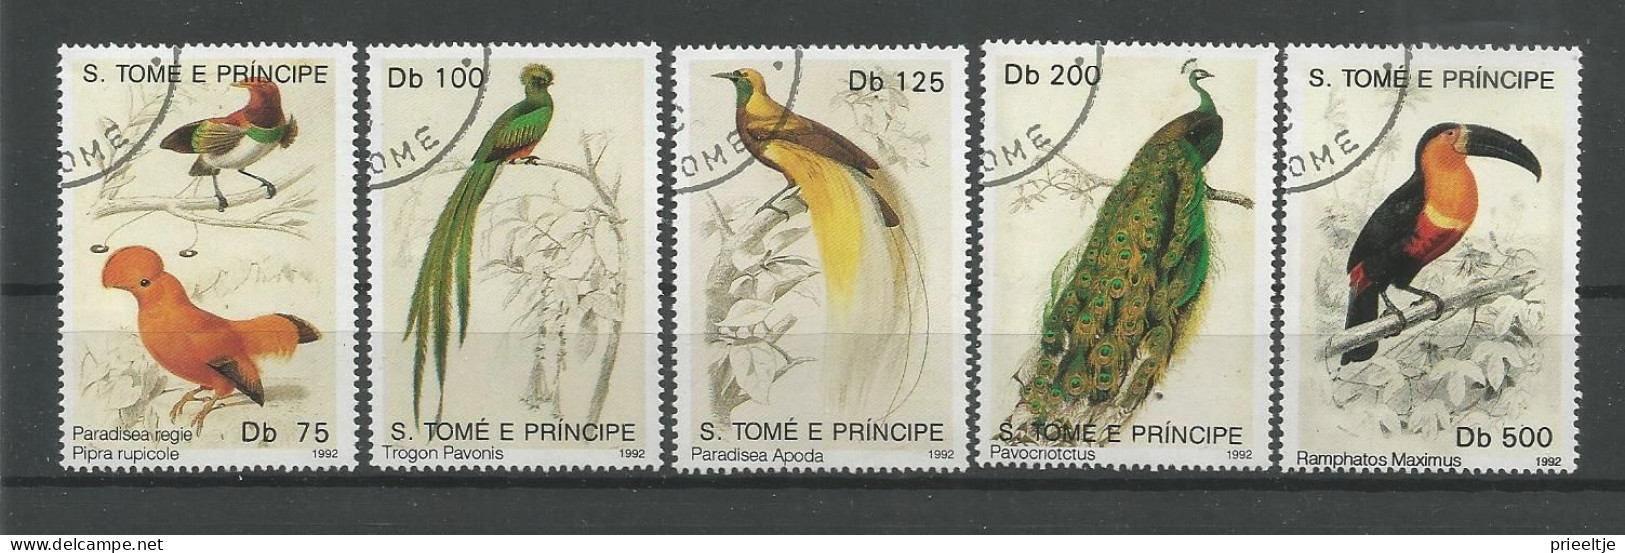 St Tome E Principe 1992 Birds  Y.T. 1099/1103 (0) - Sao Tome And Principe